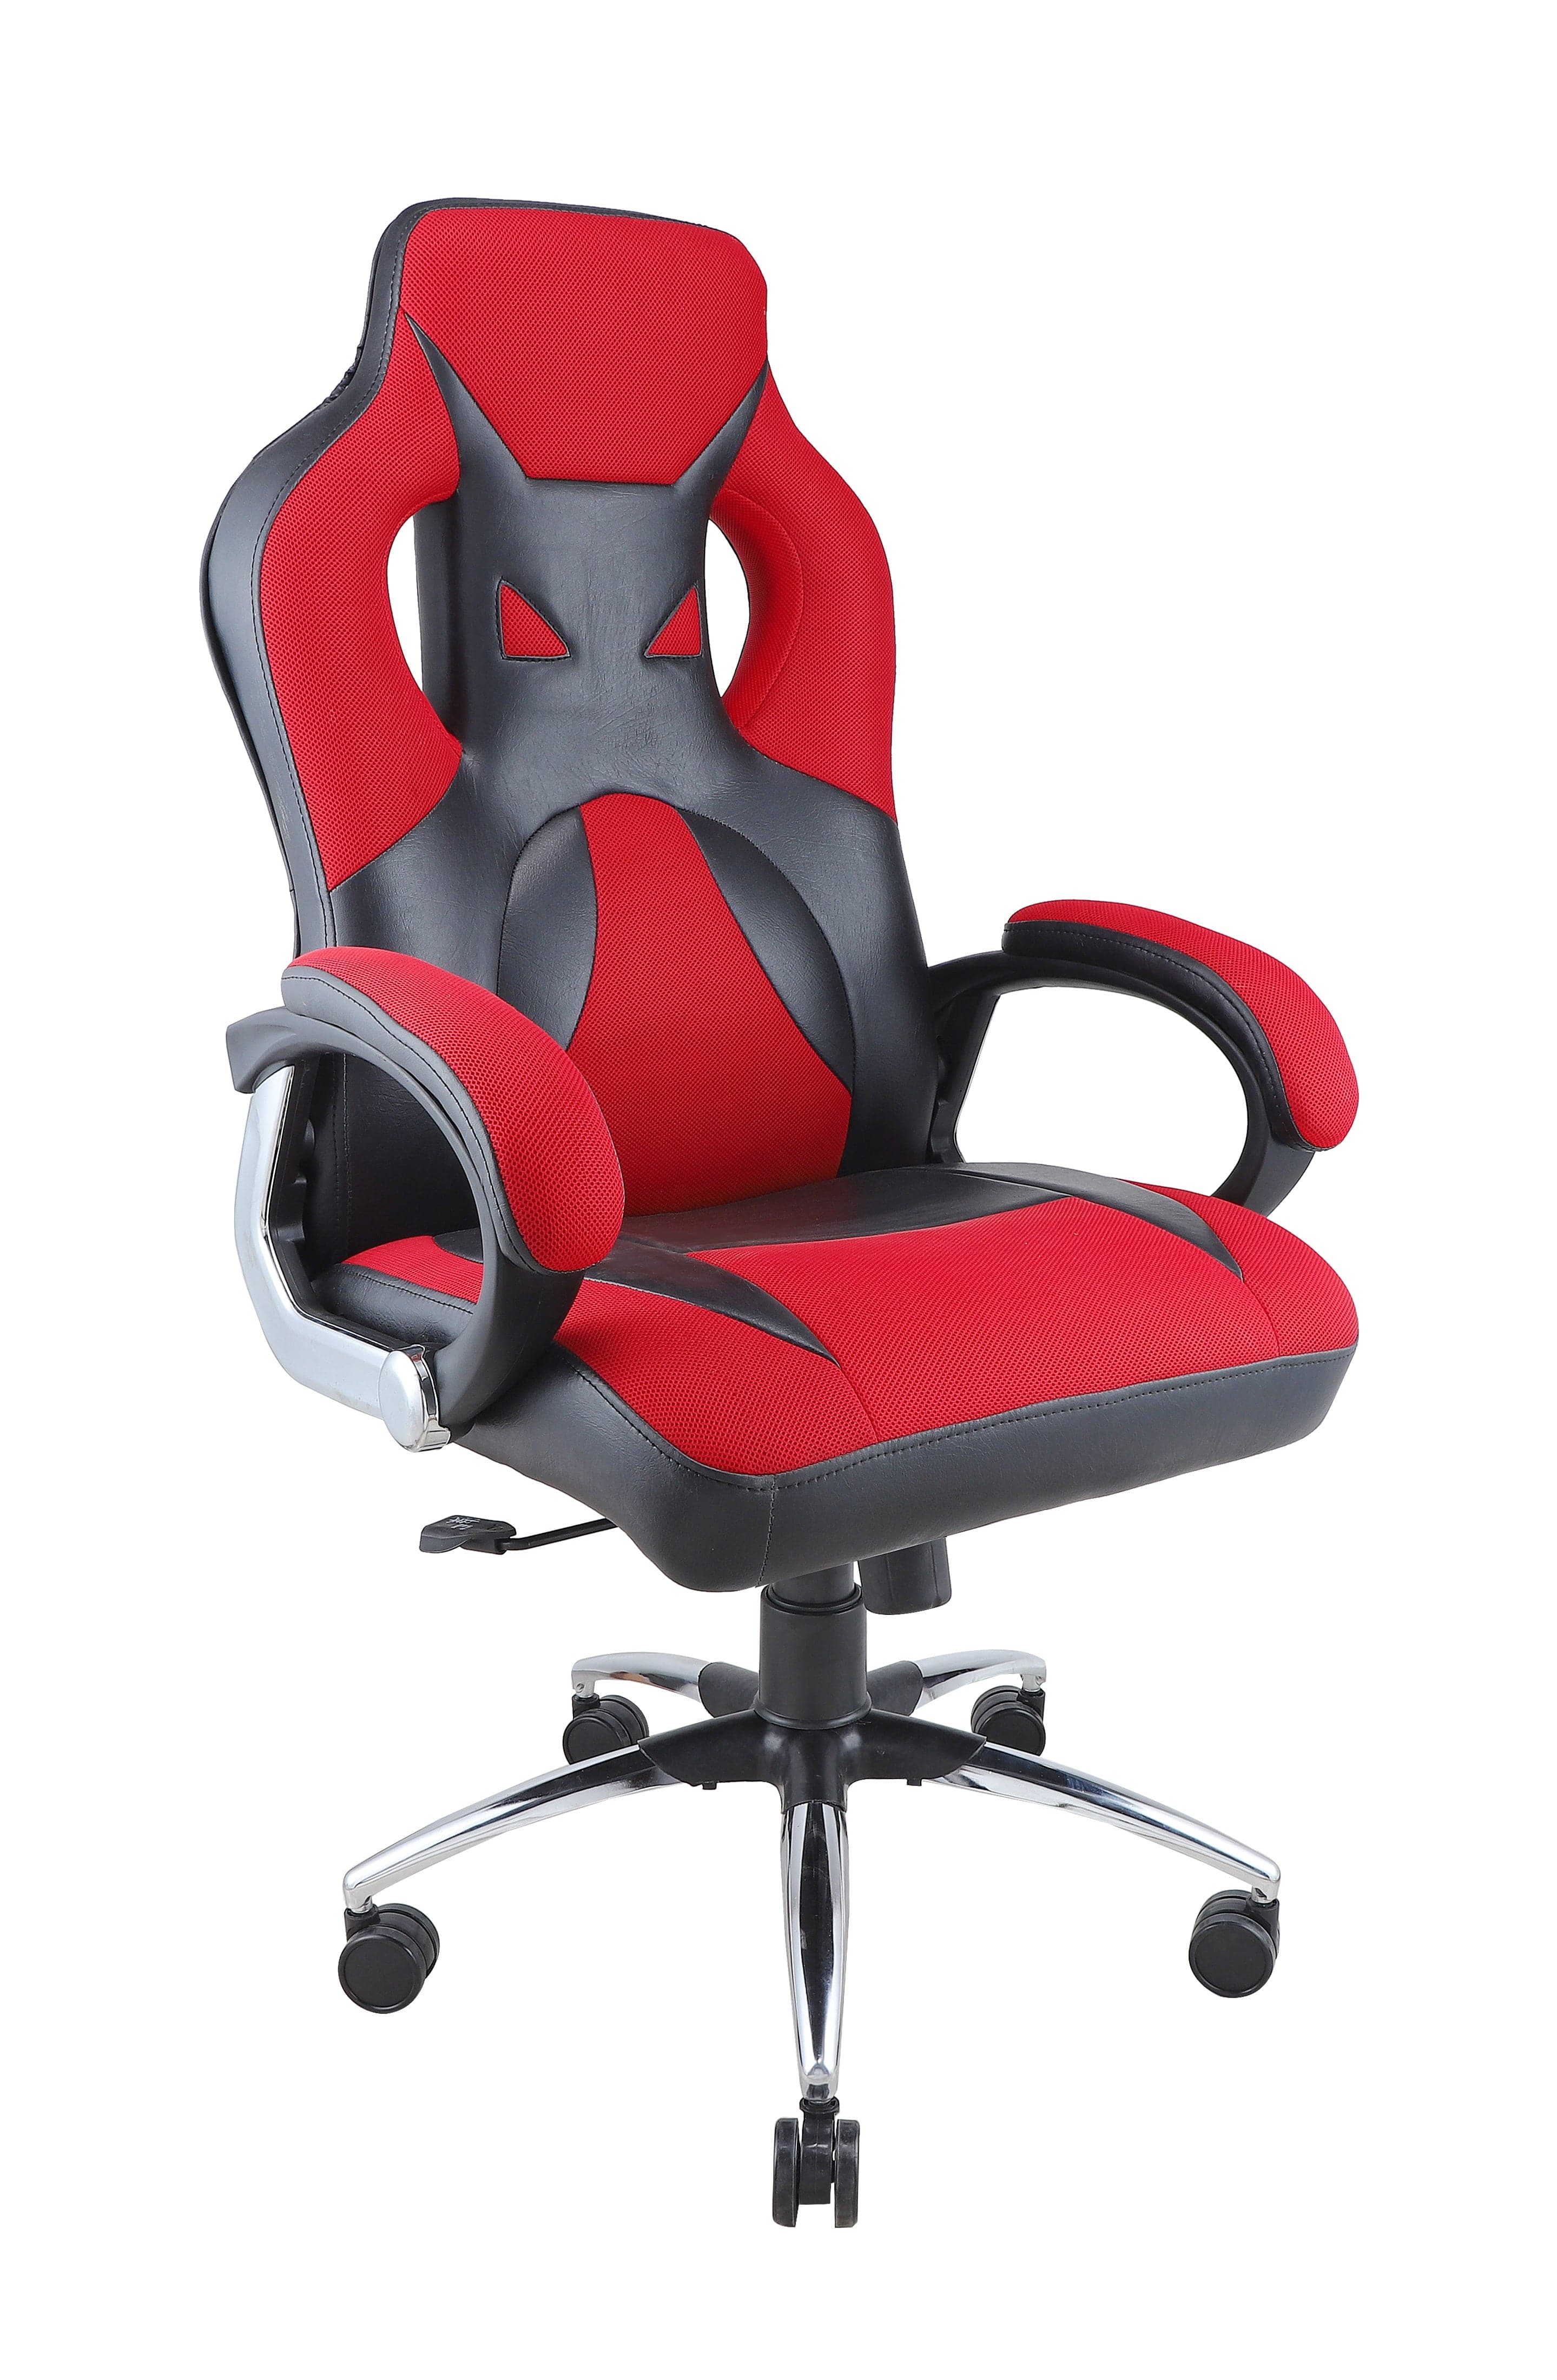 Adiko Designer Gaming Chair in Red